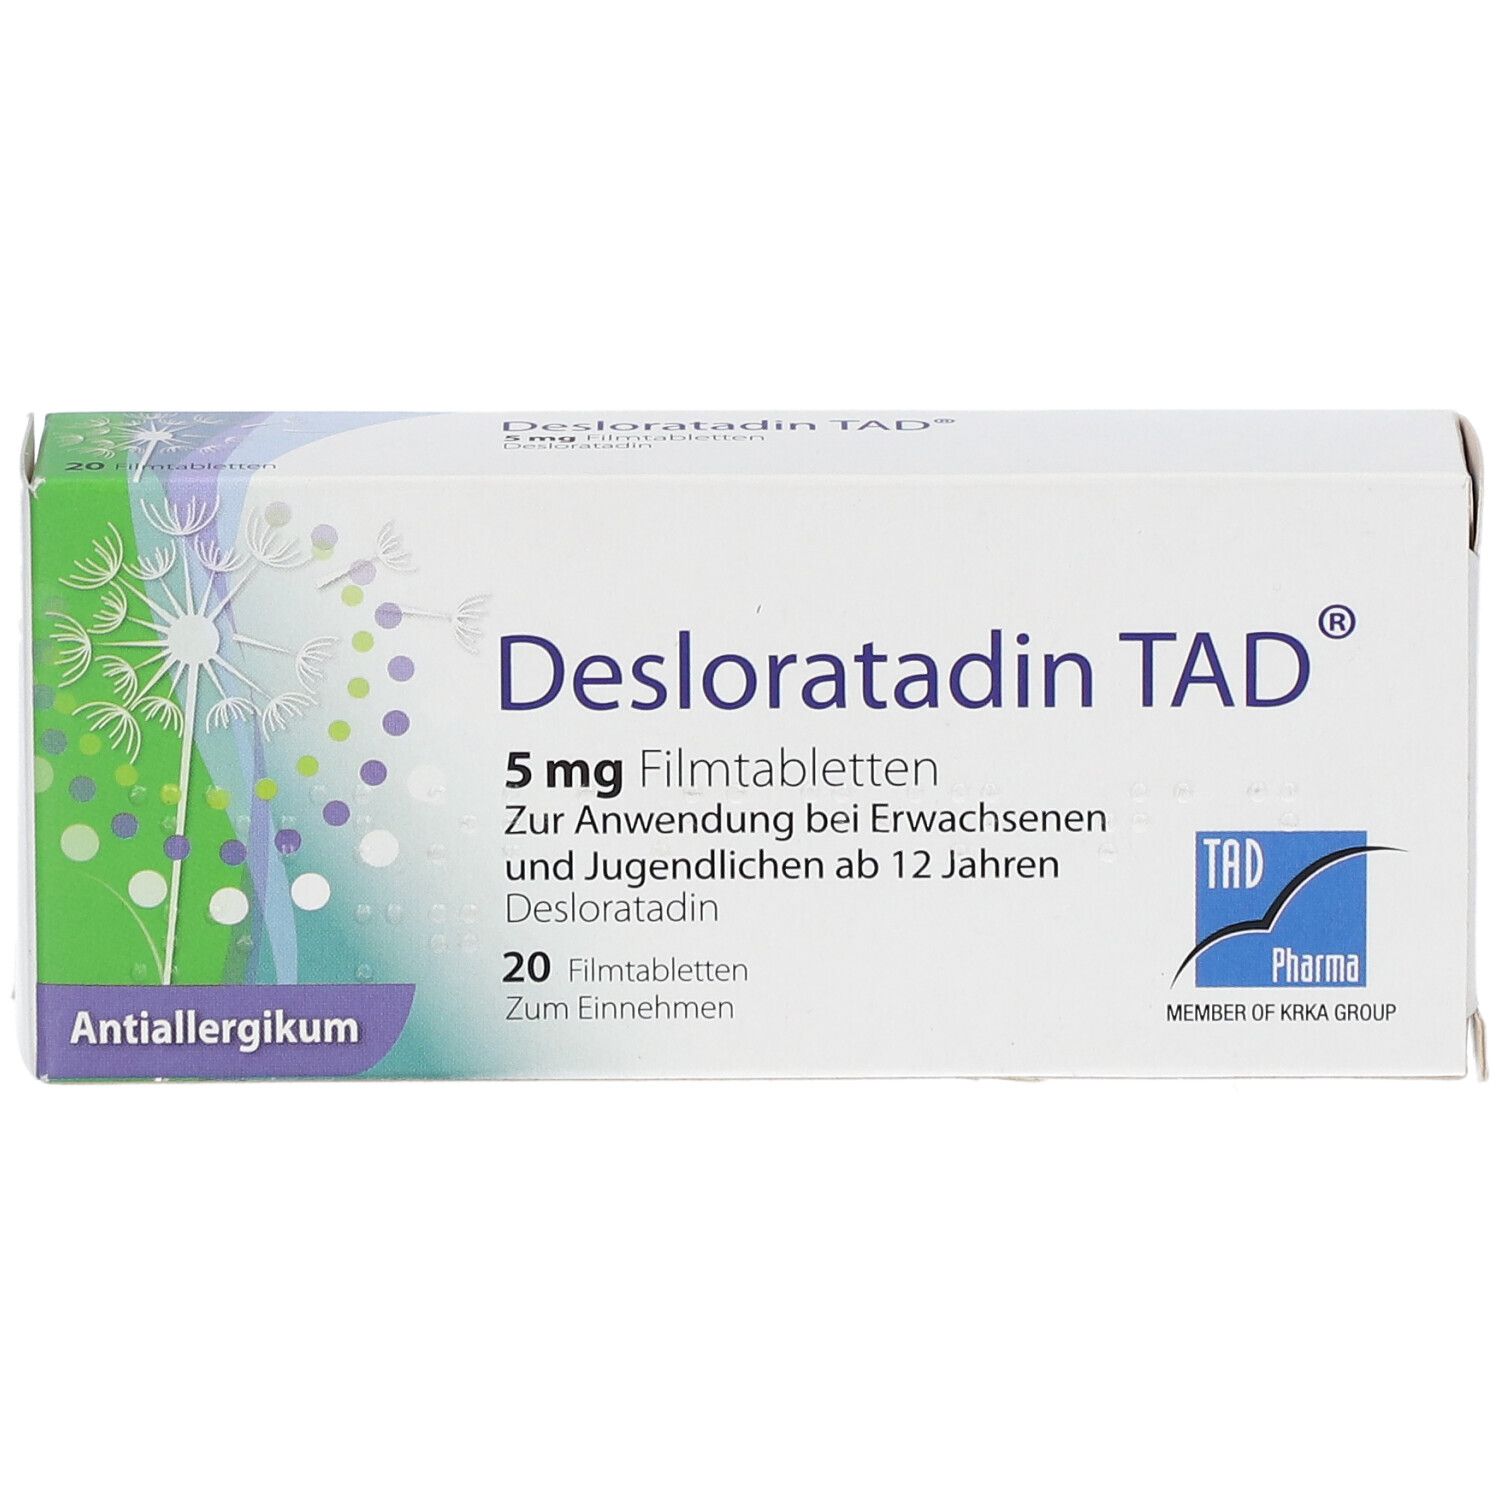 Desloratadin TAD® 5 mg Filmtabletten